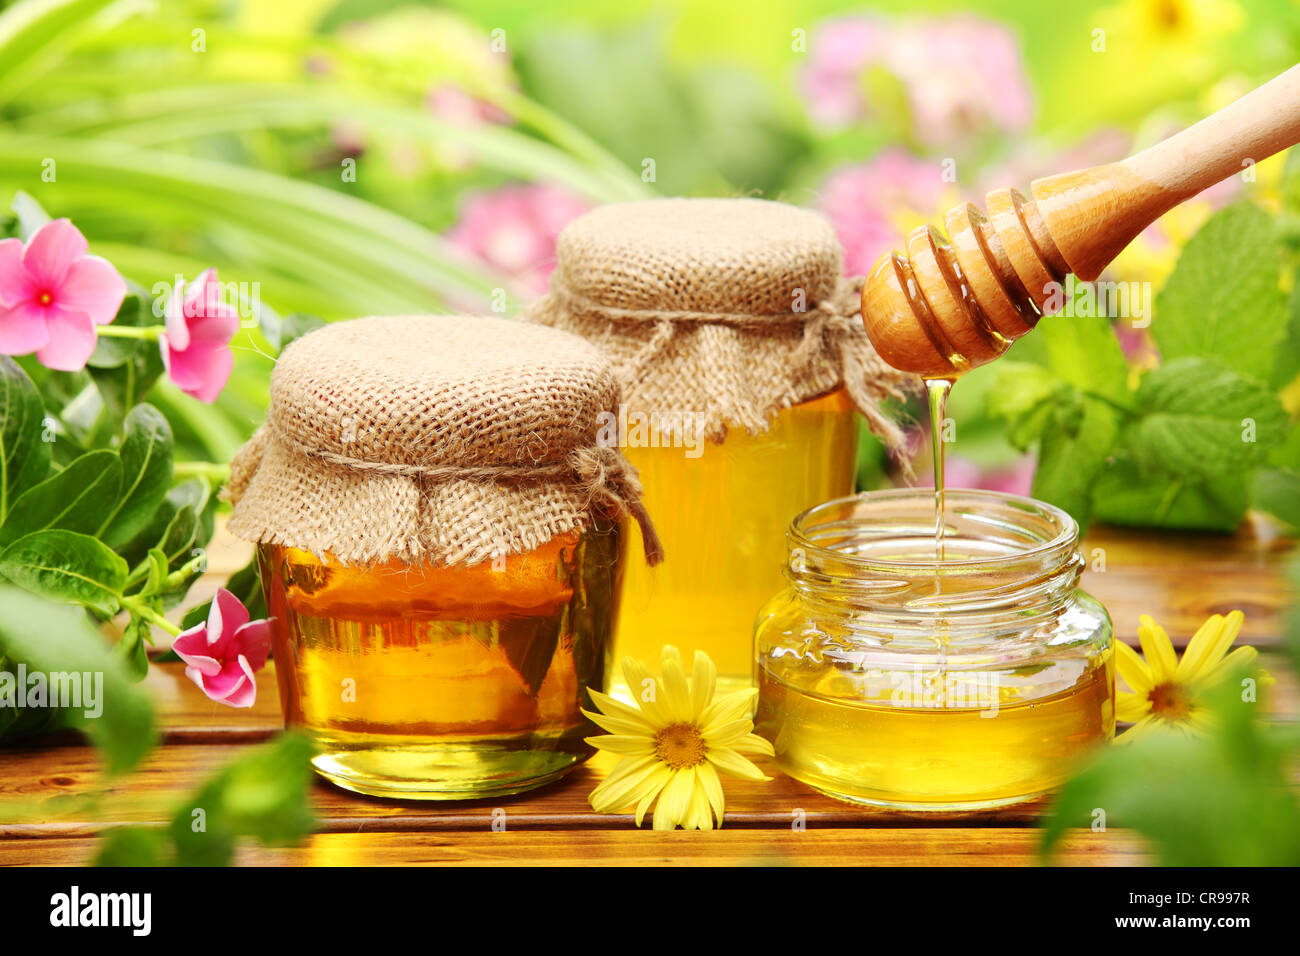 Le miel en pots de verre avec des fleurs. Banque D'Images